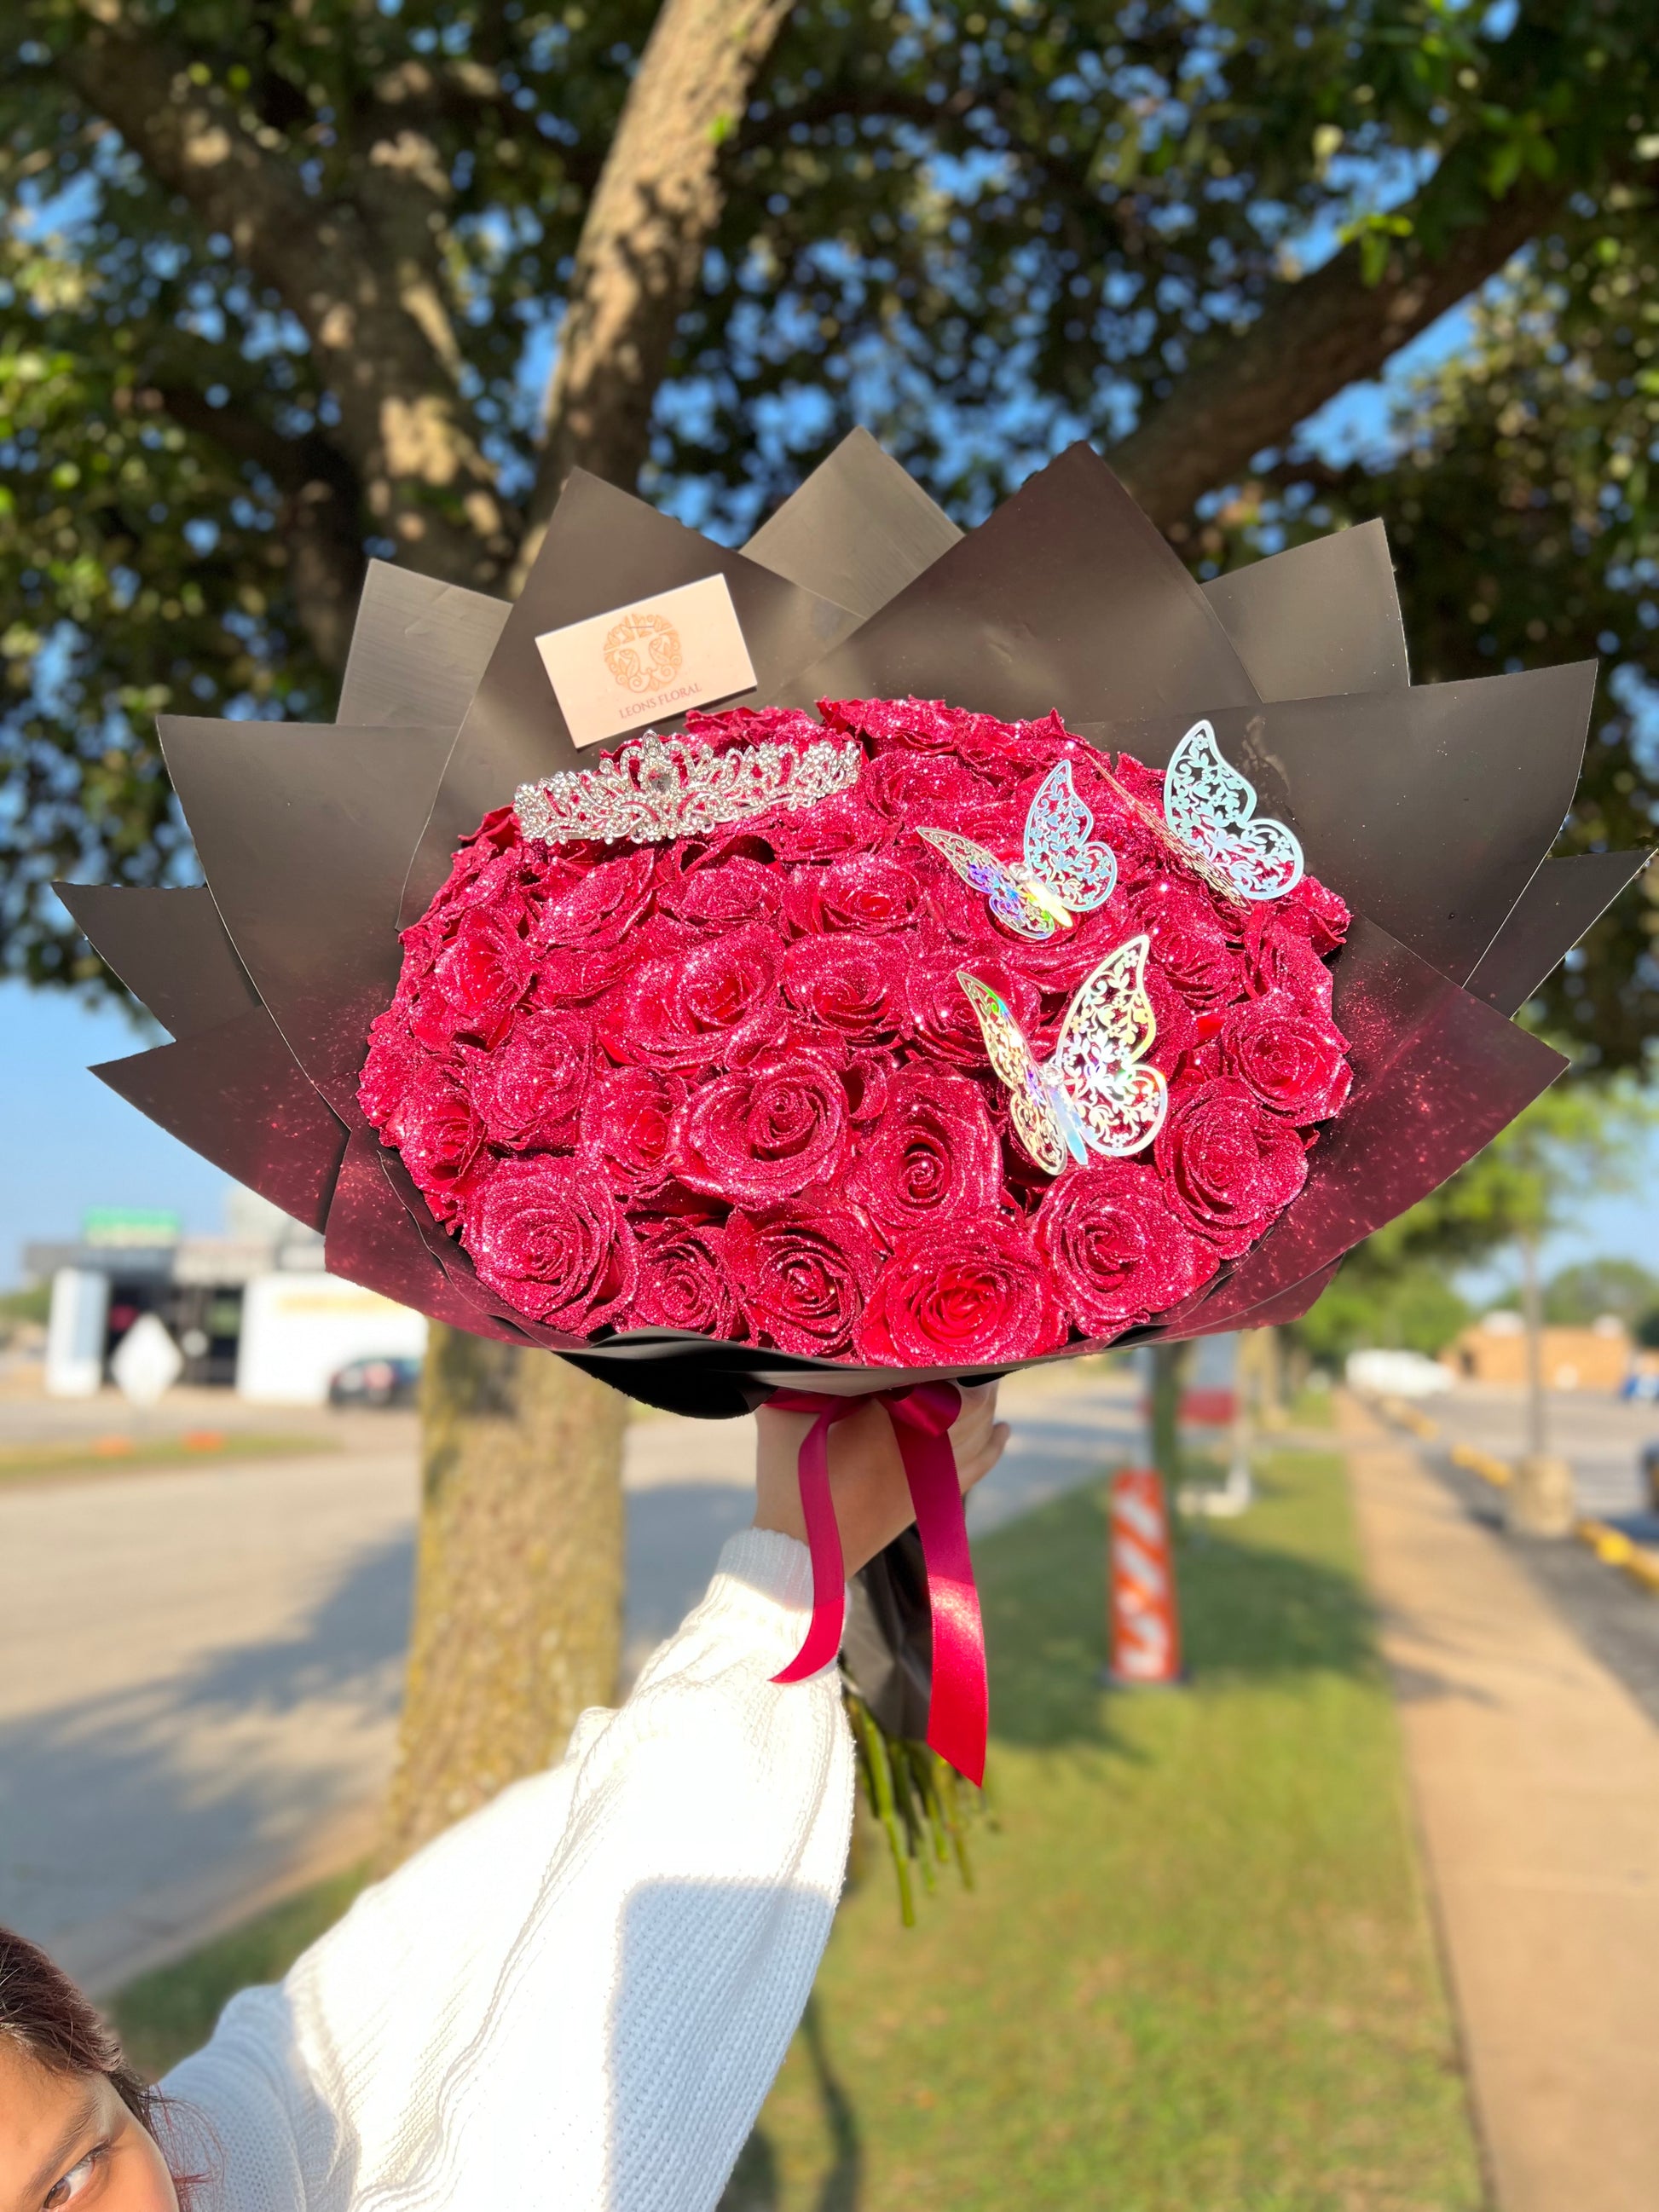 Glitter Rose Bouquet – Leon's Floral